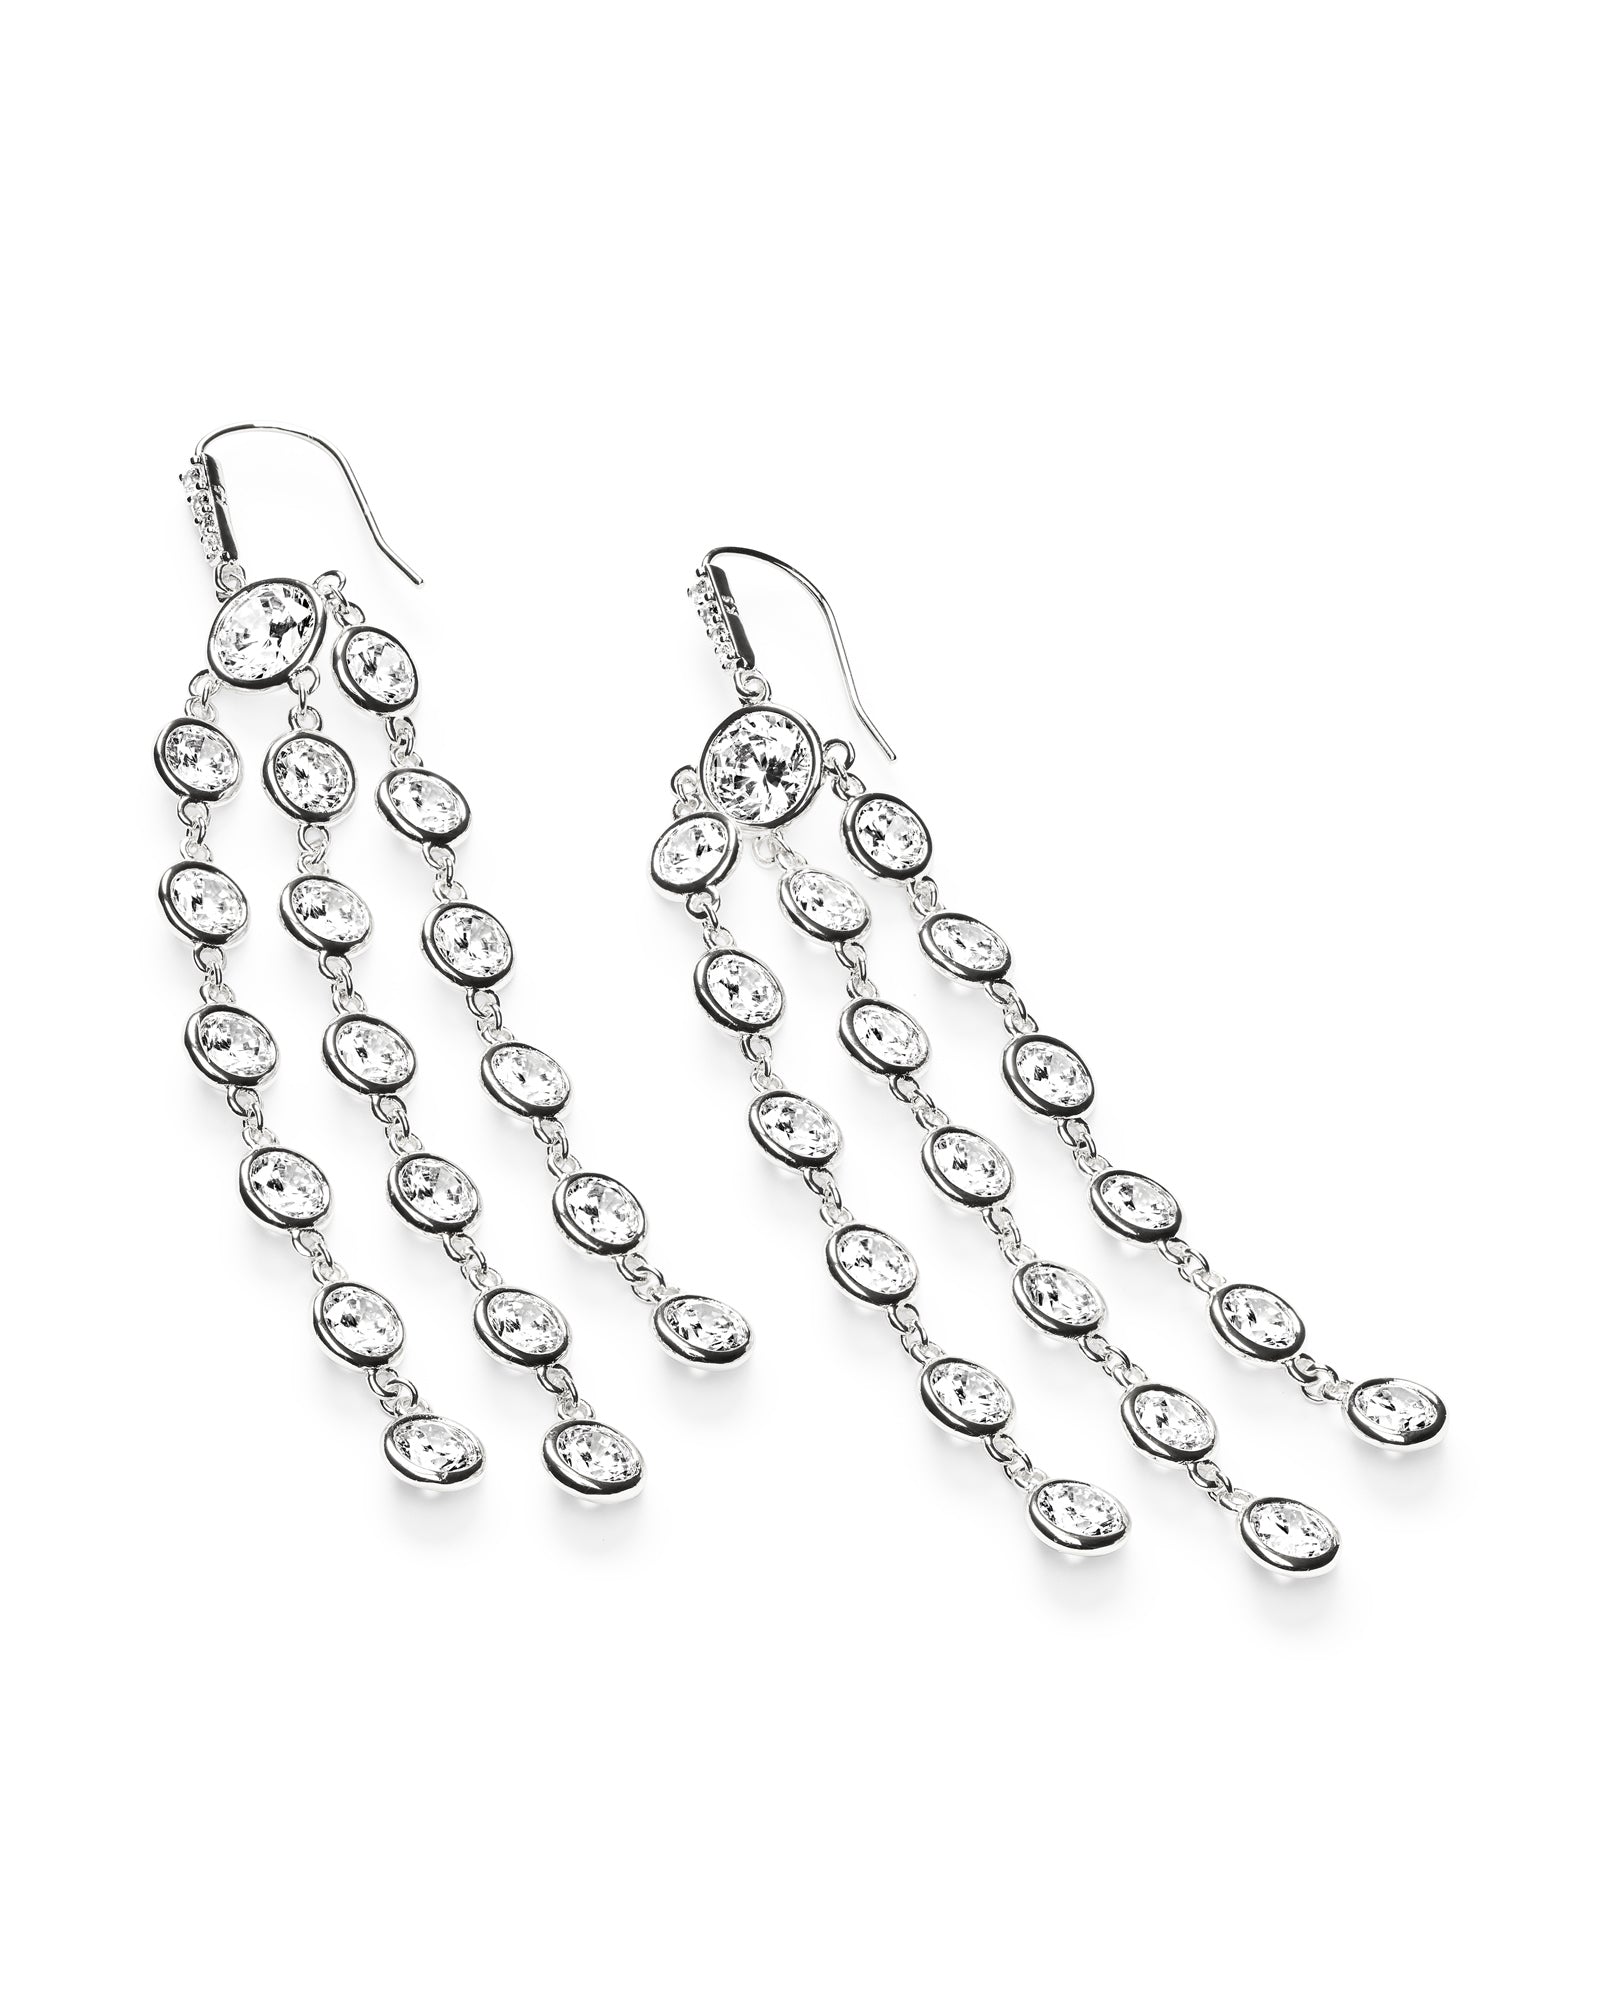 Kendra Scott Daya Earrings Rhodium Metal White CZ-Earrings-Kendra Scott-E1353RHD-The Twisted Chandelier